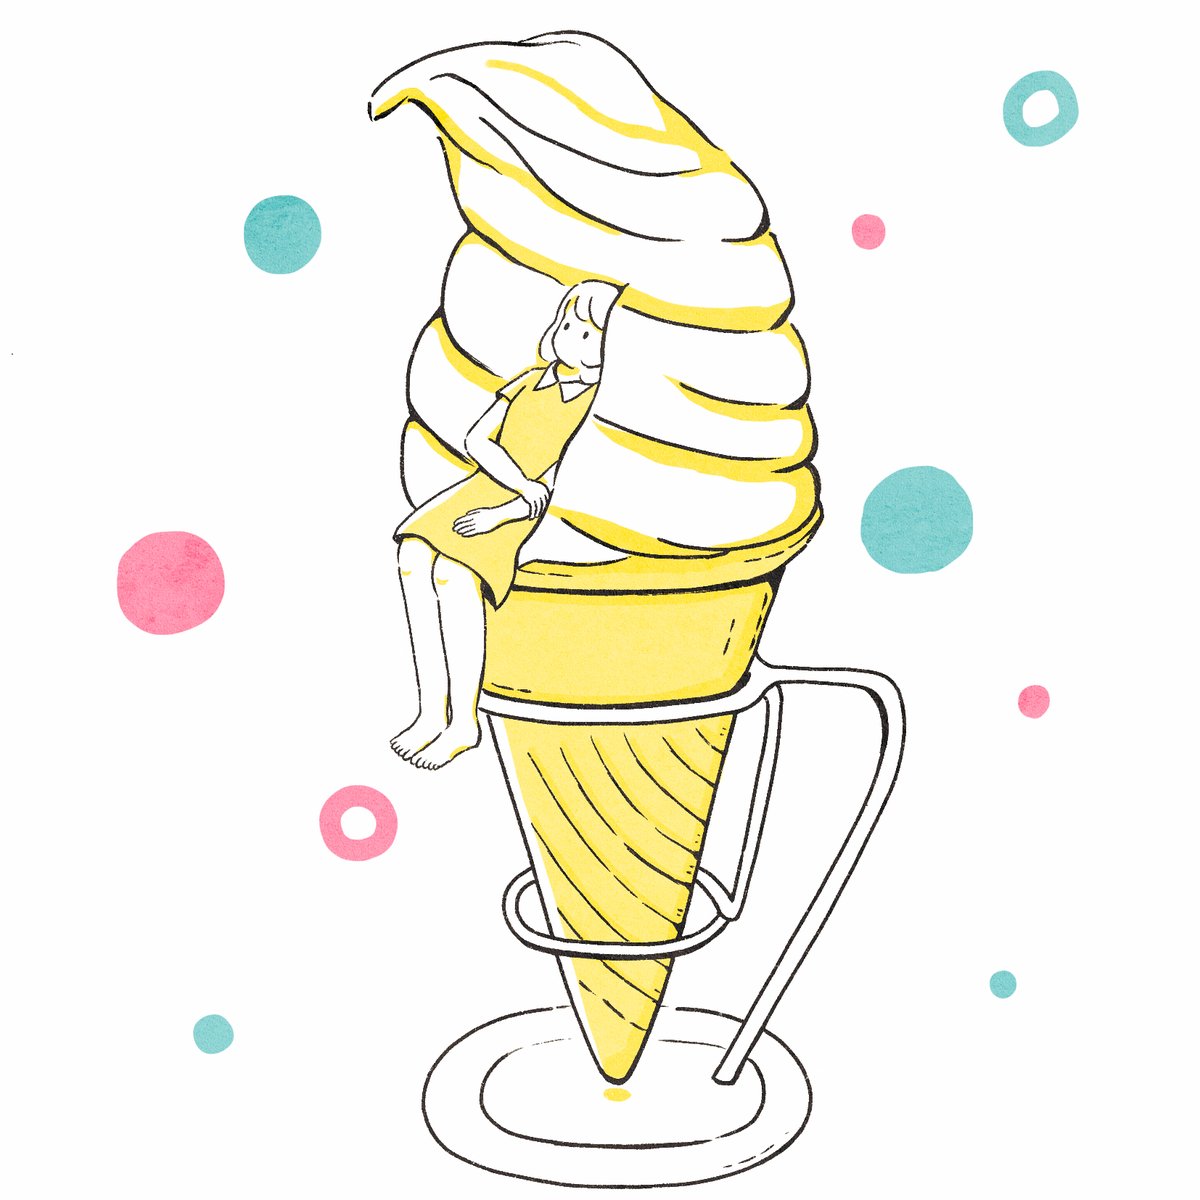 「#イラスト #illustration #夏 #ソフトクリーム
ソフトクリームに」|蒼井すばる| Illustratorのイラスト